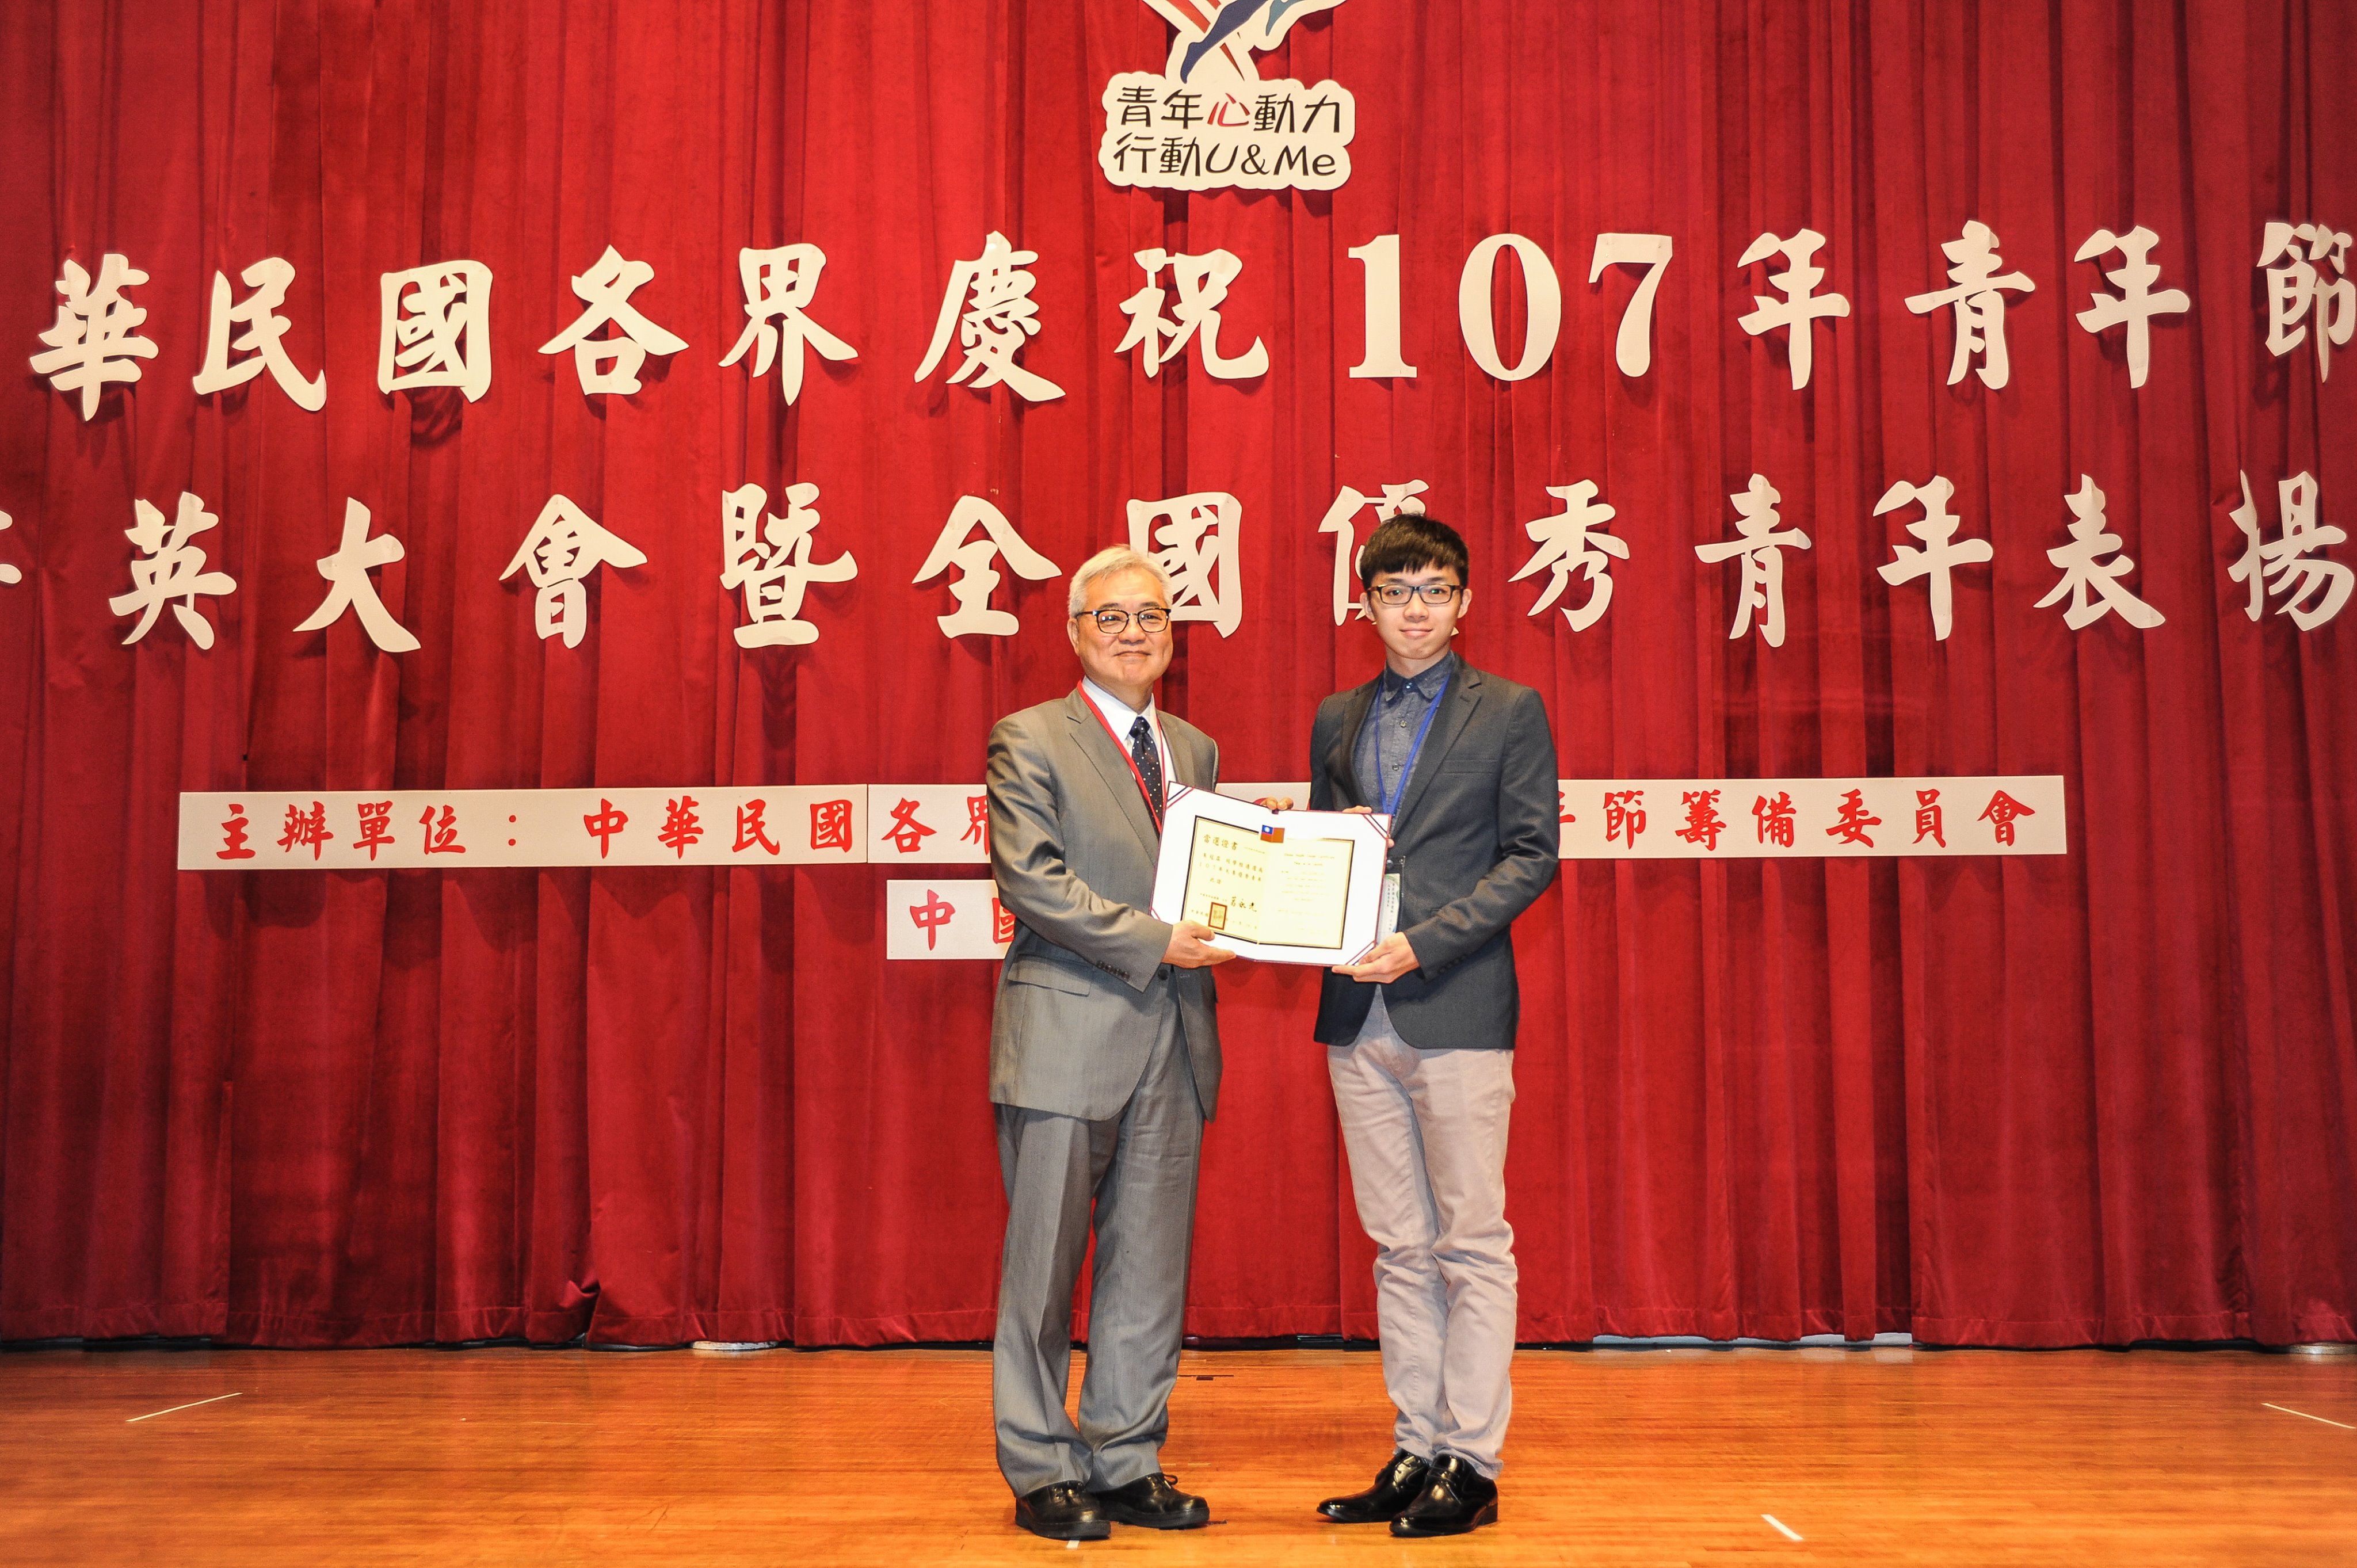 恭喜護理科五年6班朱冠霖同學榮獲「107年全國優秀青年表揚」